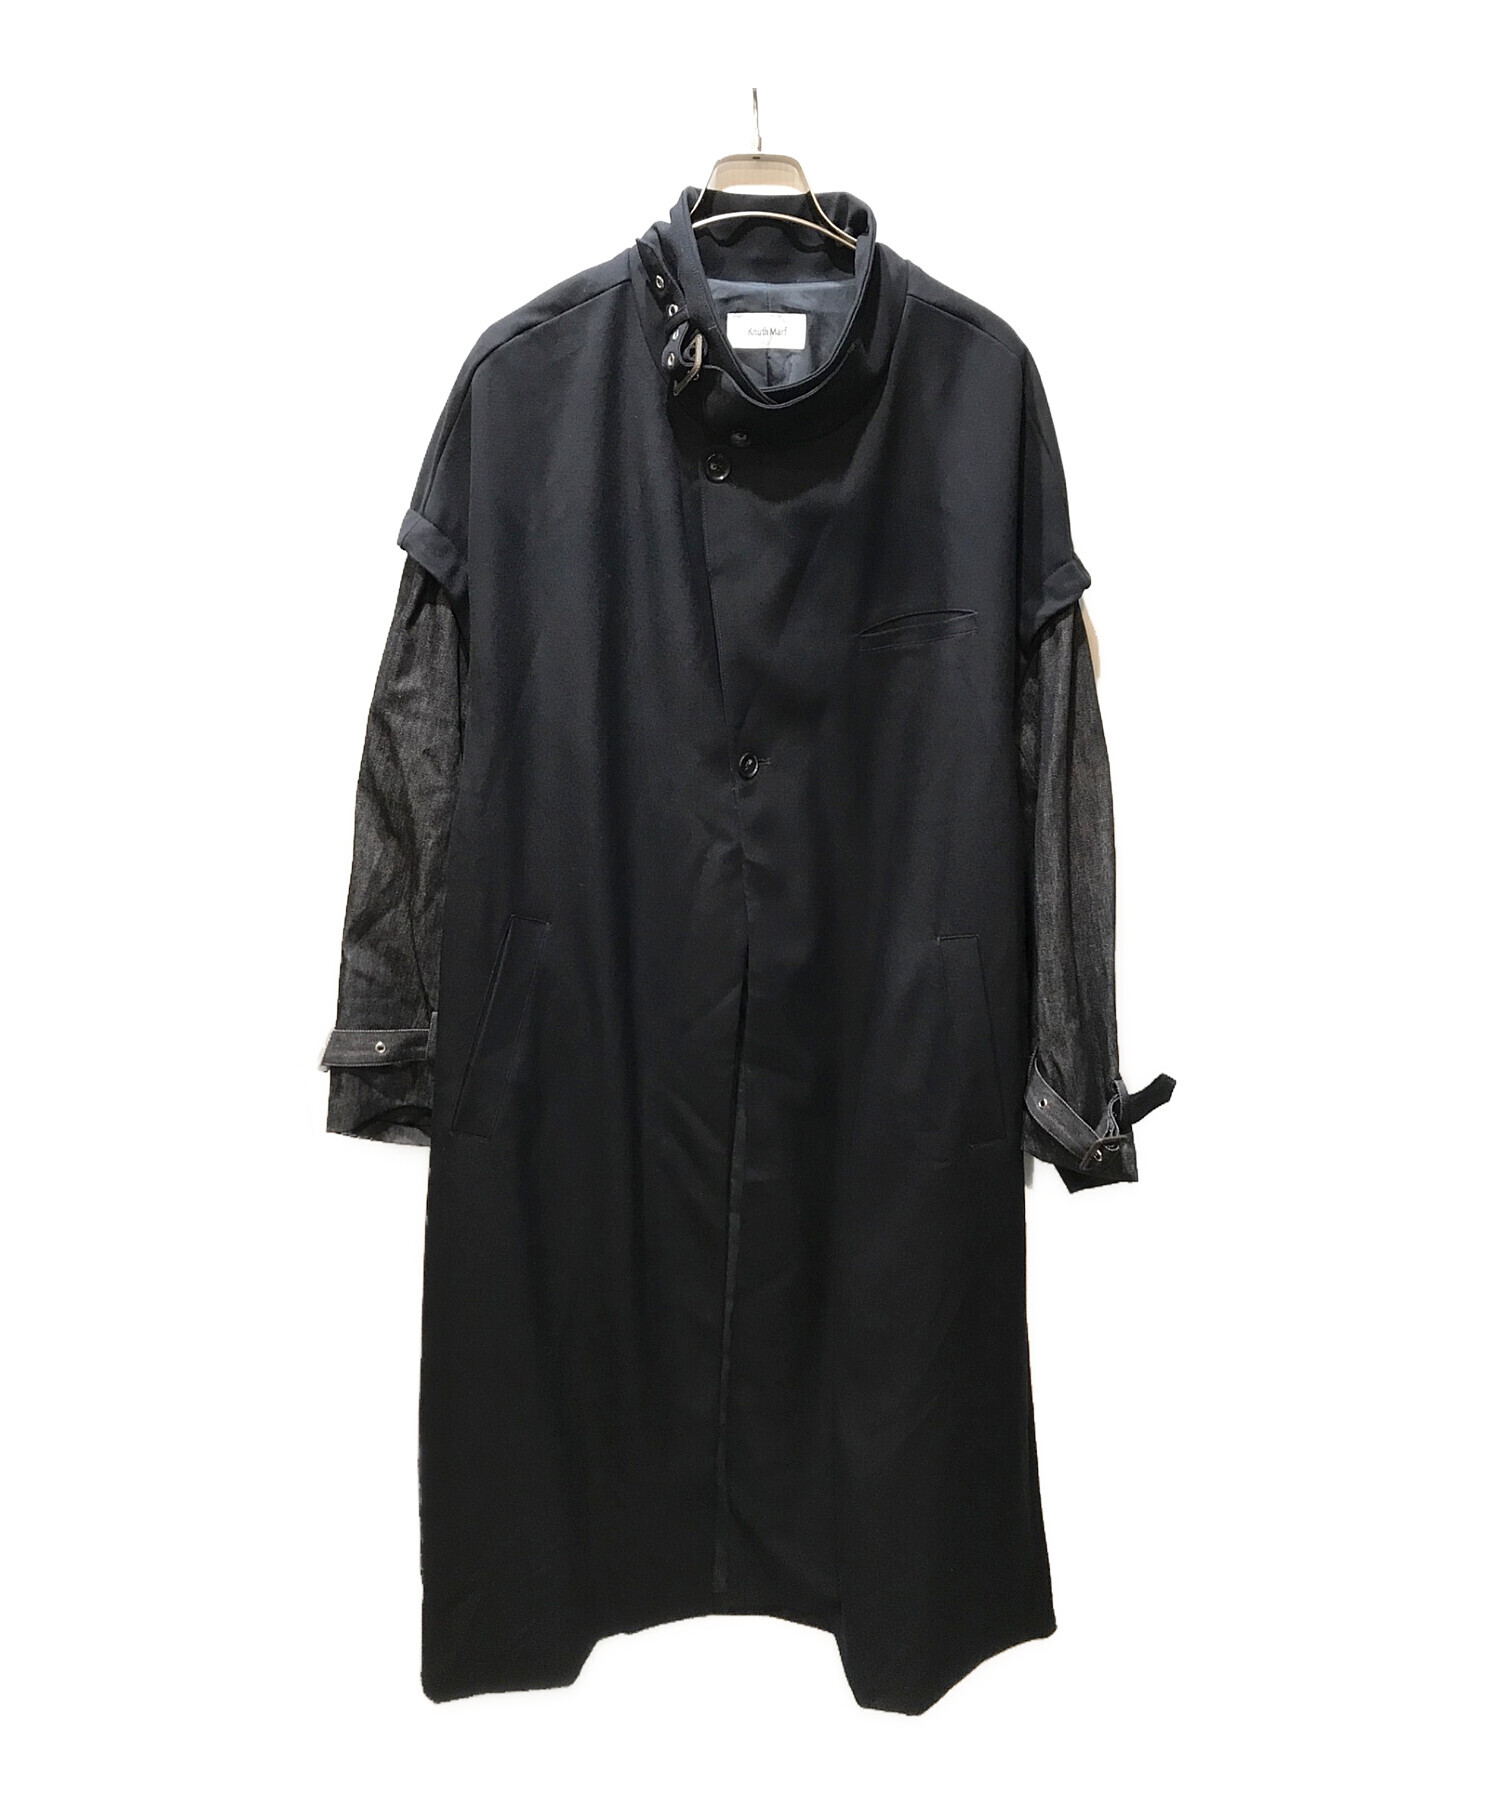 安心発送】 Knuth Marf label leather jacket mundoglass.com